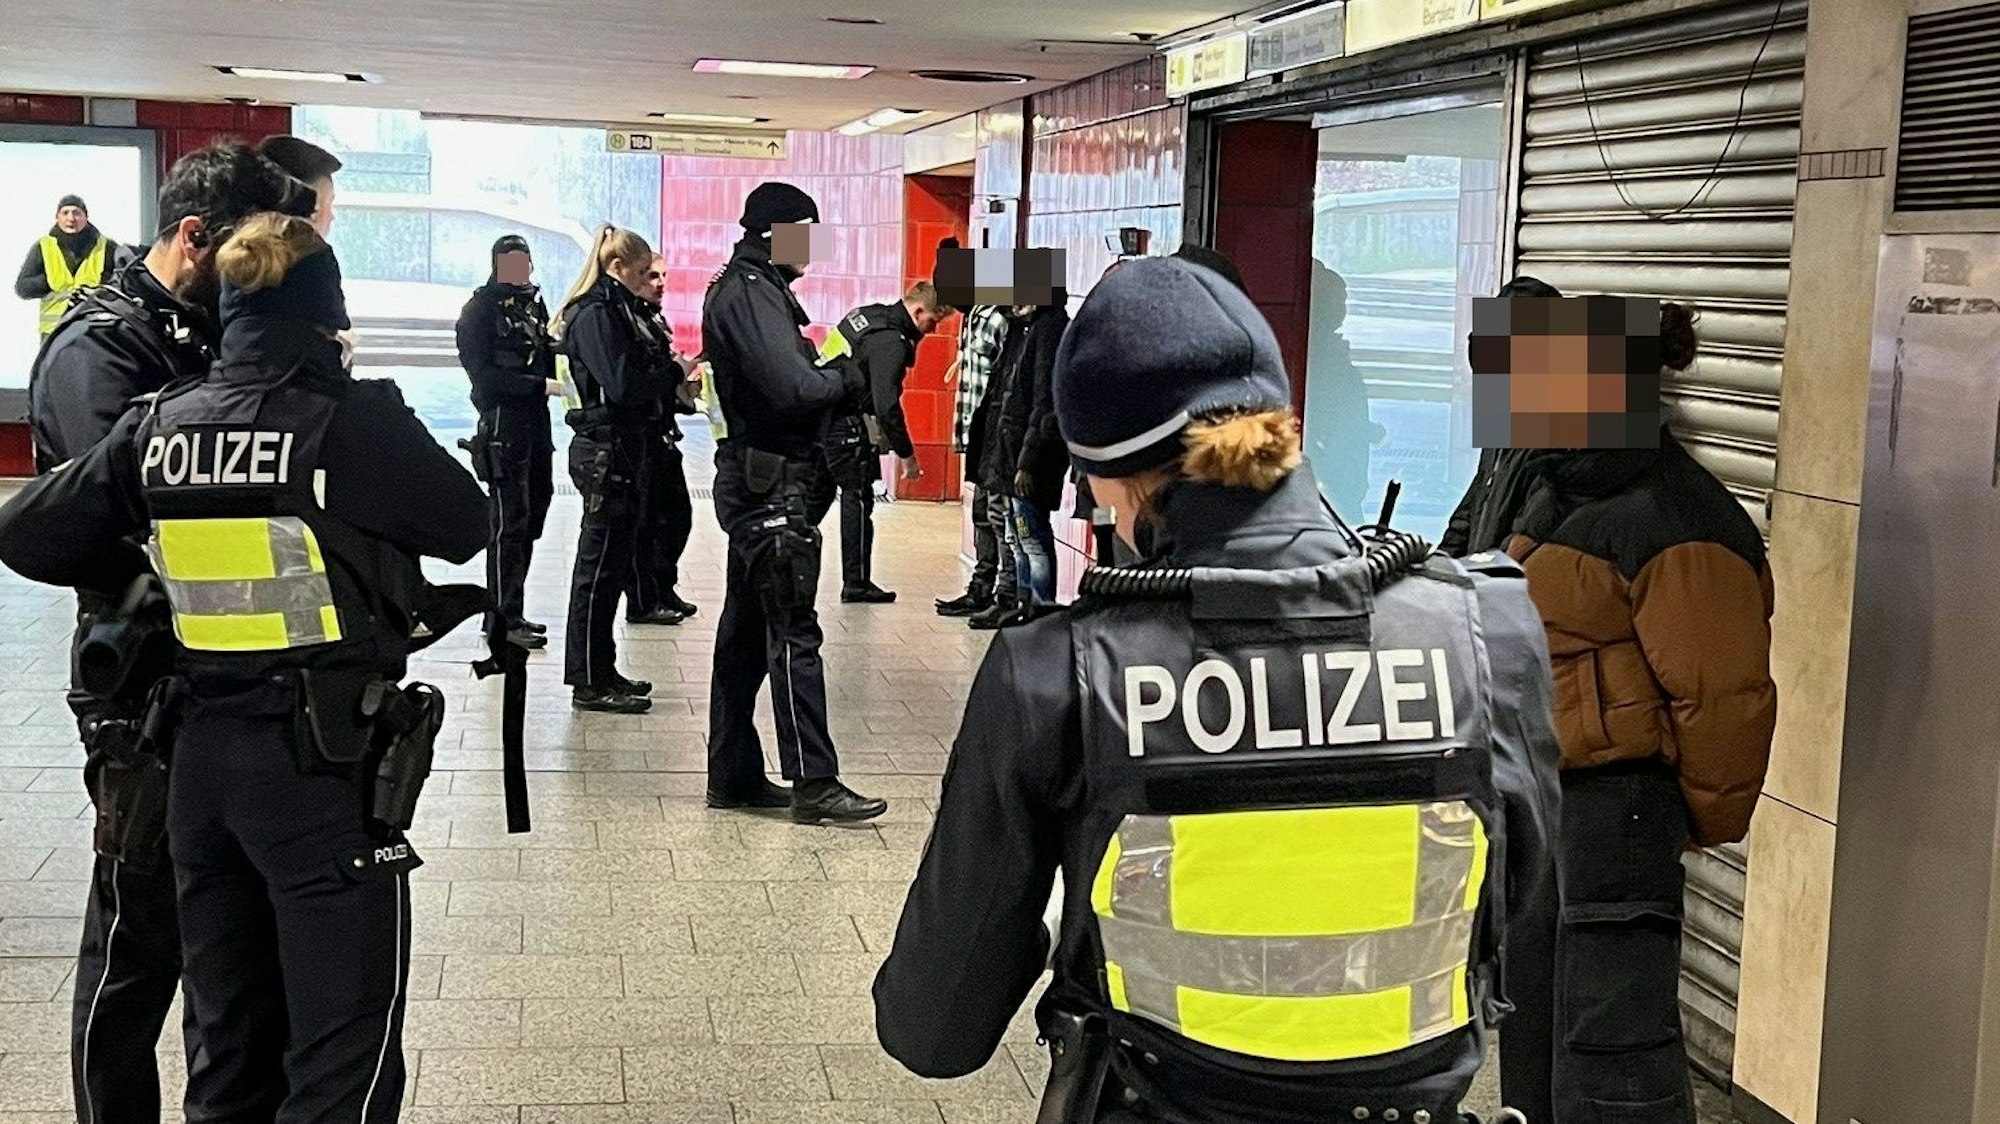 Polizisten durchsuchen mehrere mutmaßliche Drogendealer oder deren Kunden, die mit dem Rücken zu einer Wand in der KVB-Zwischenebene am Ebertplatz stehen.